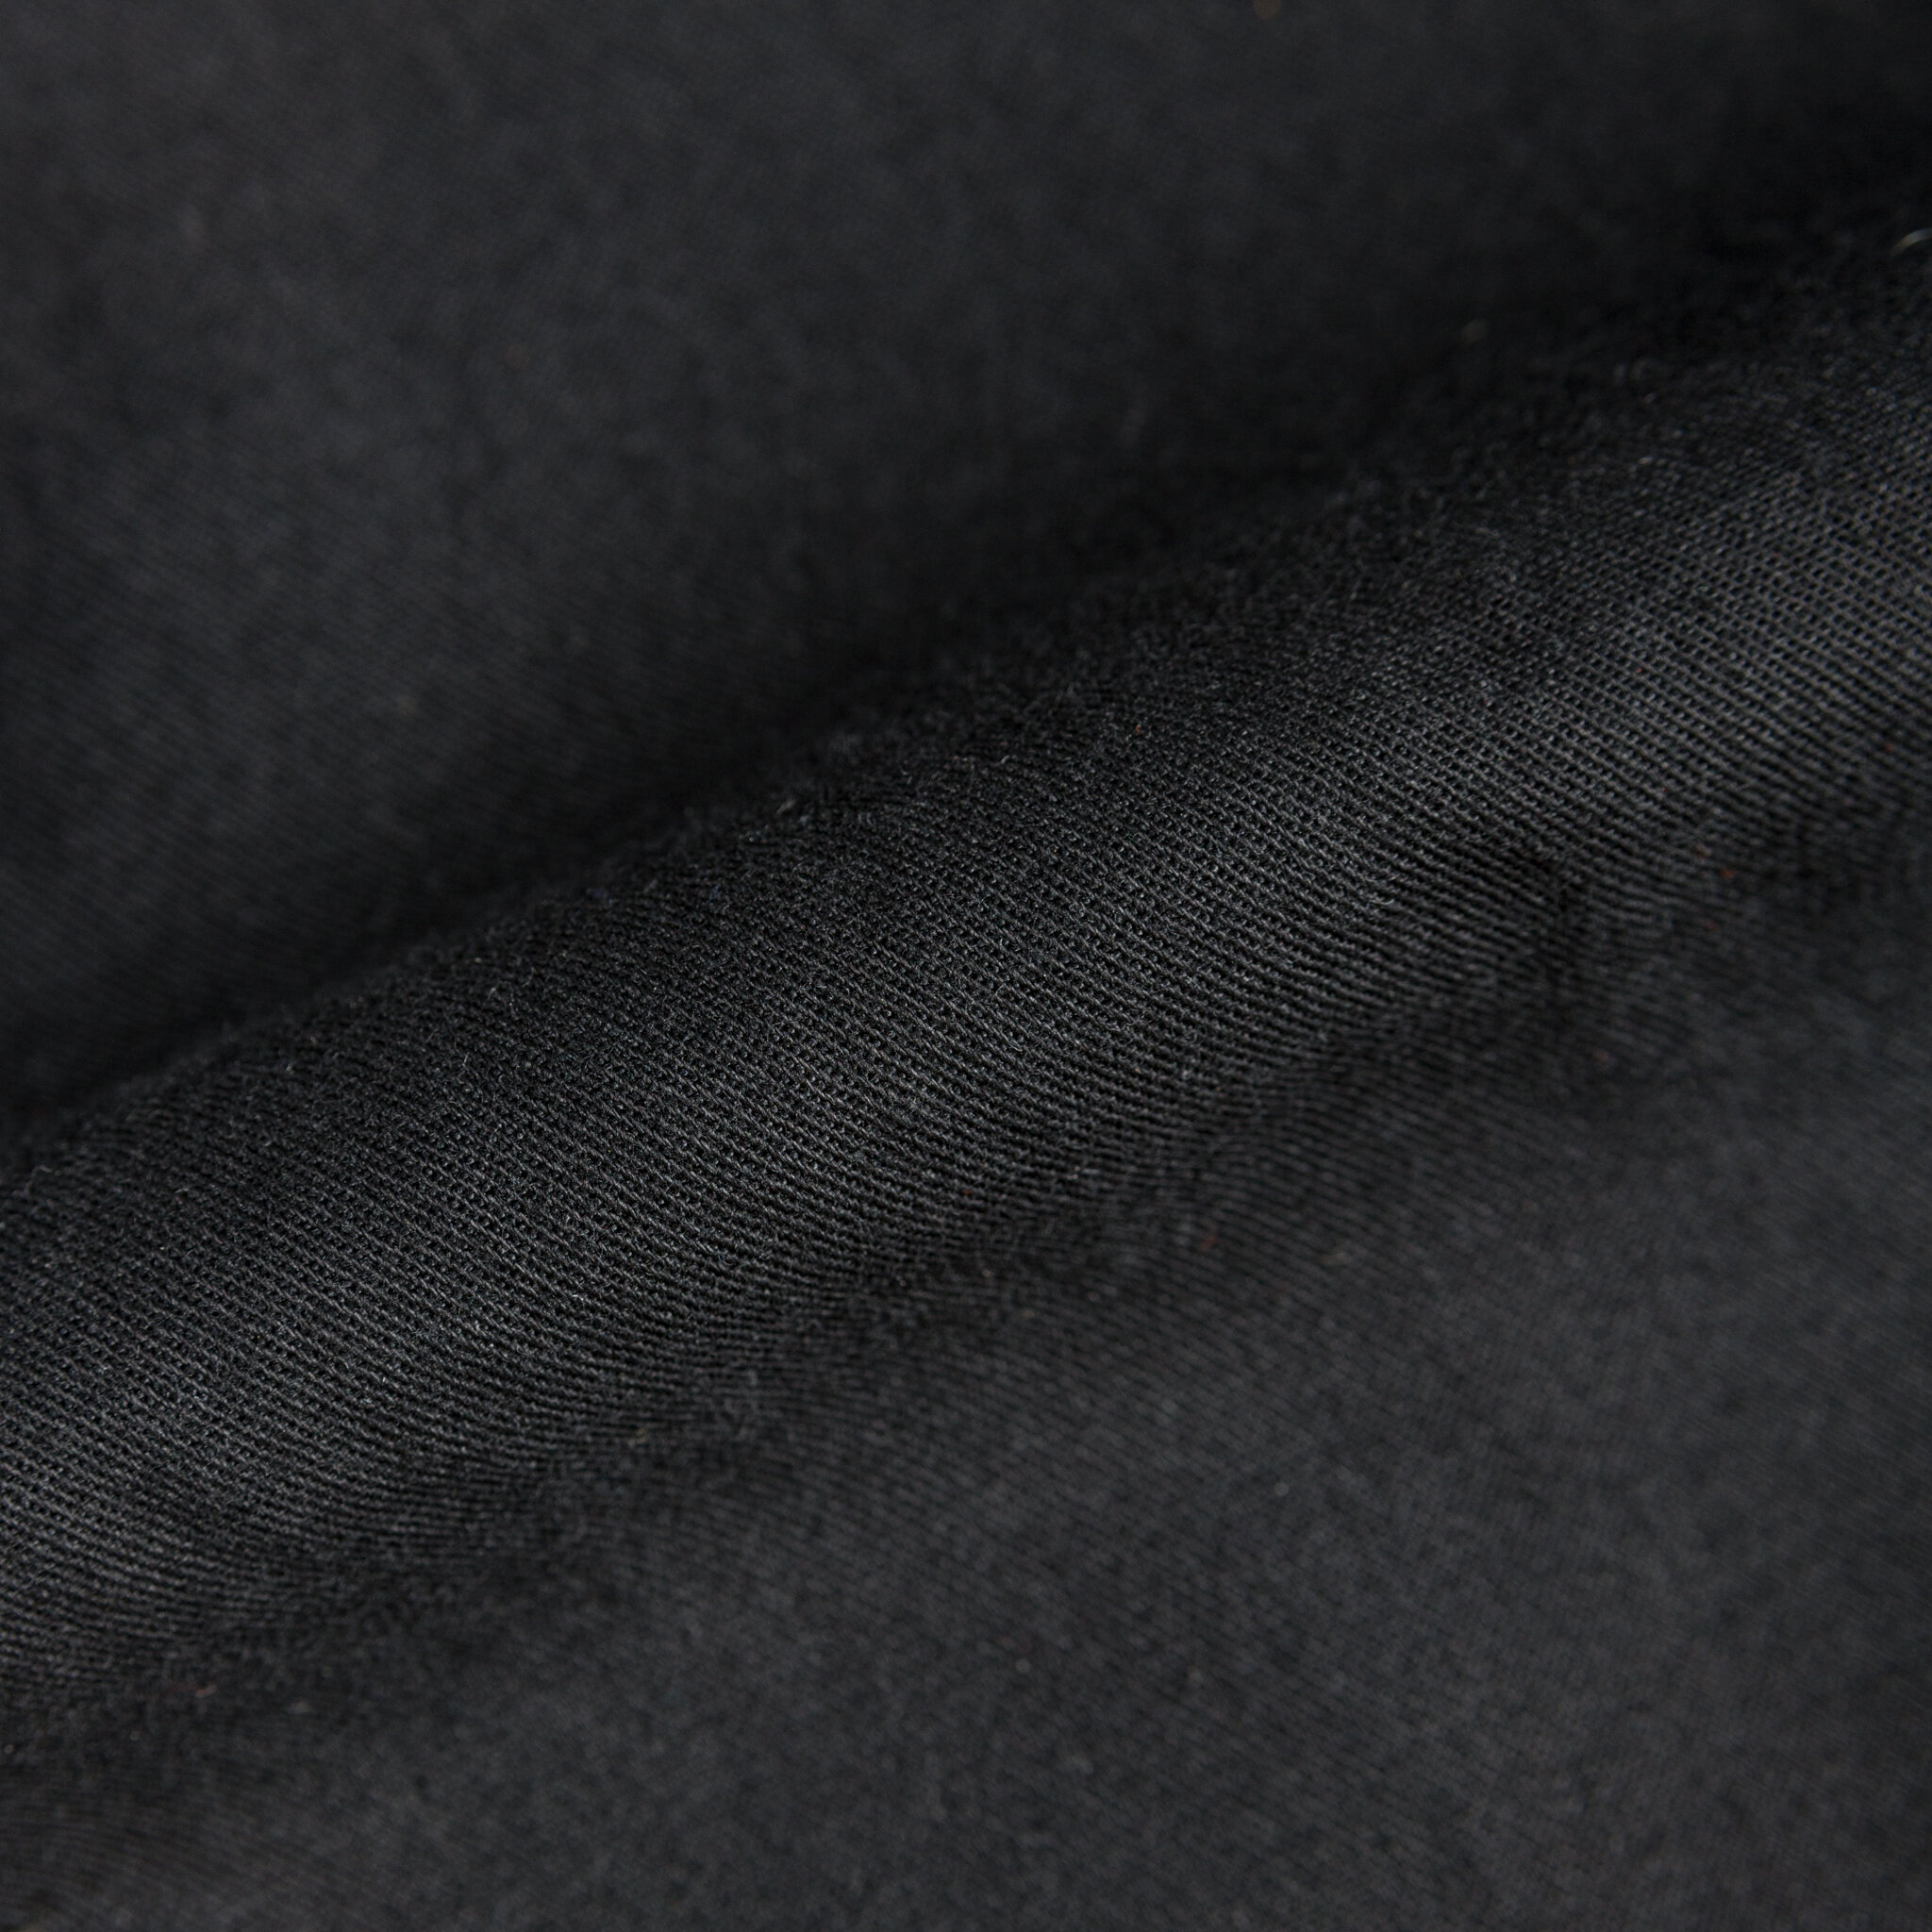  Kimono Shirt - Black Short Slub Denim - fabric 